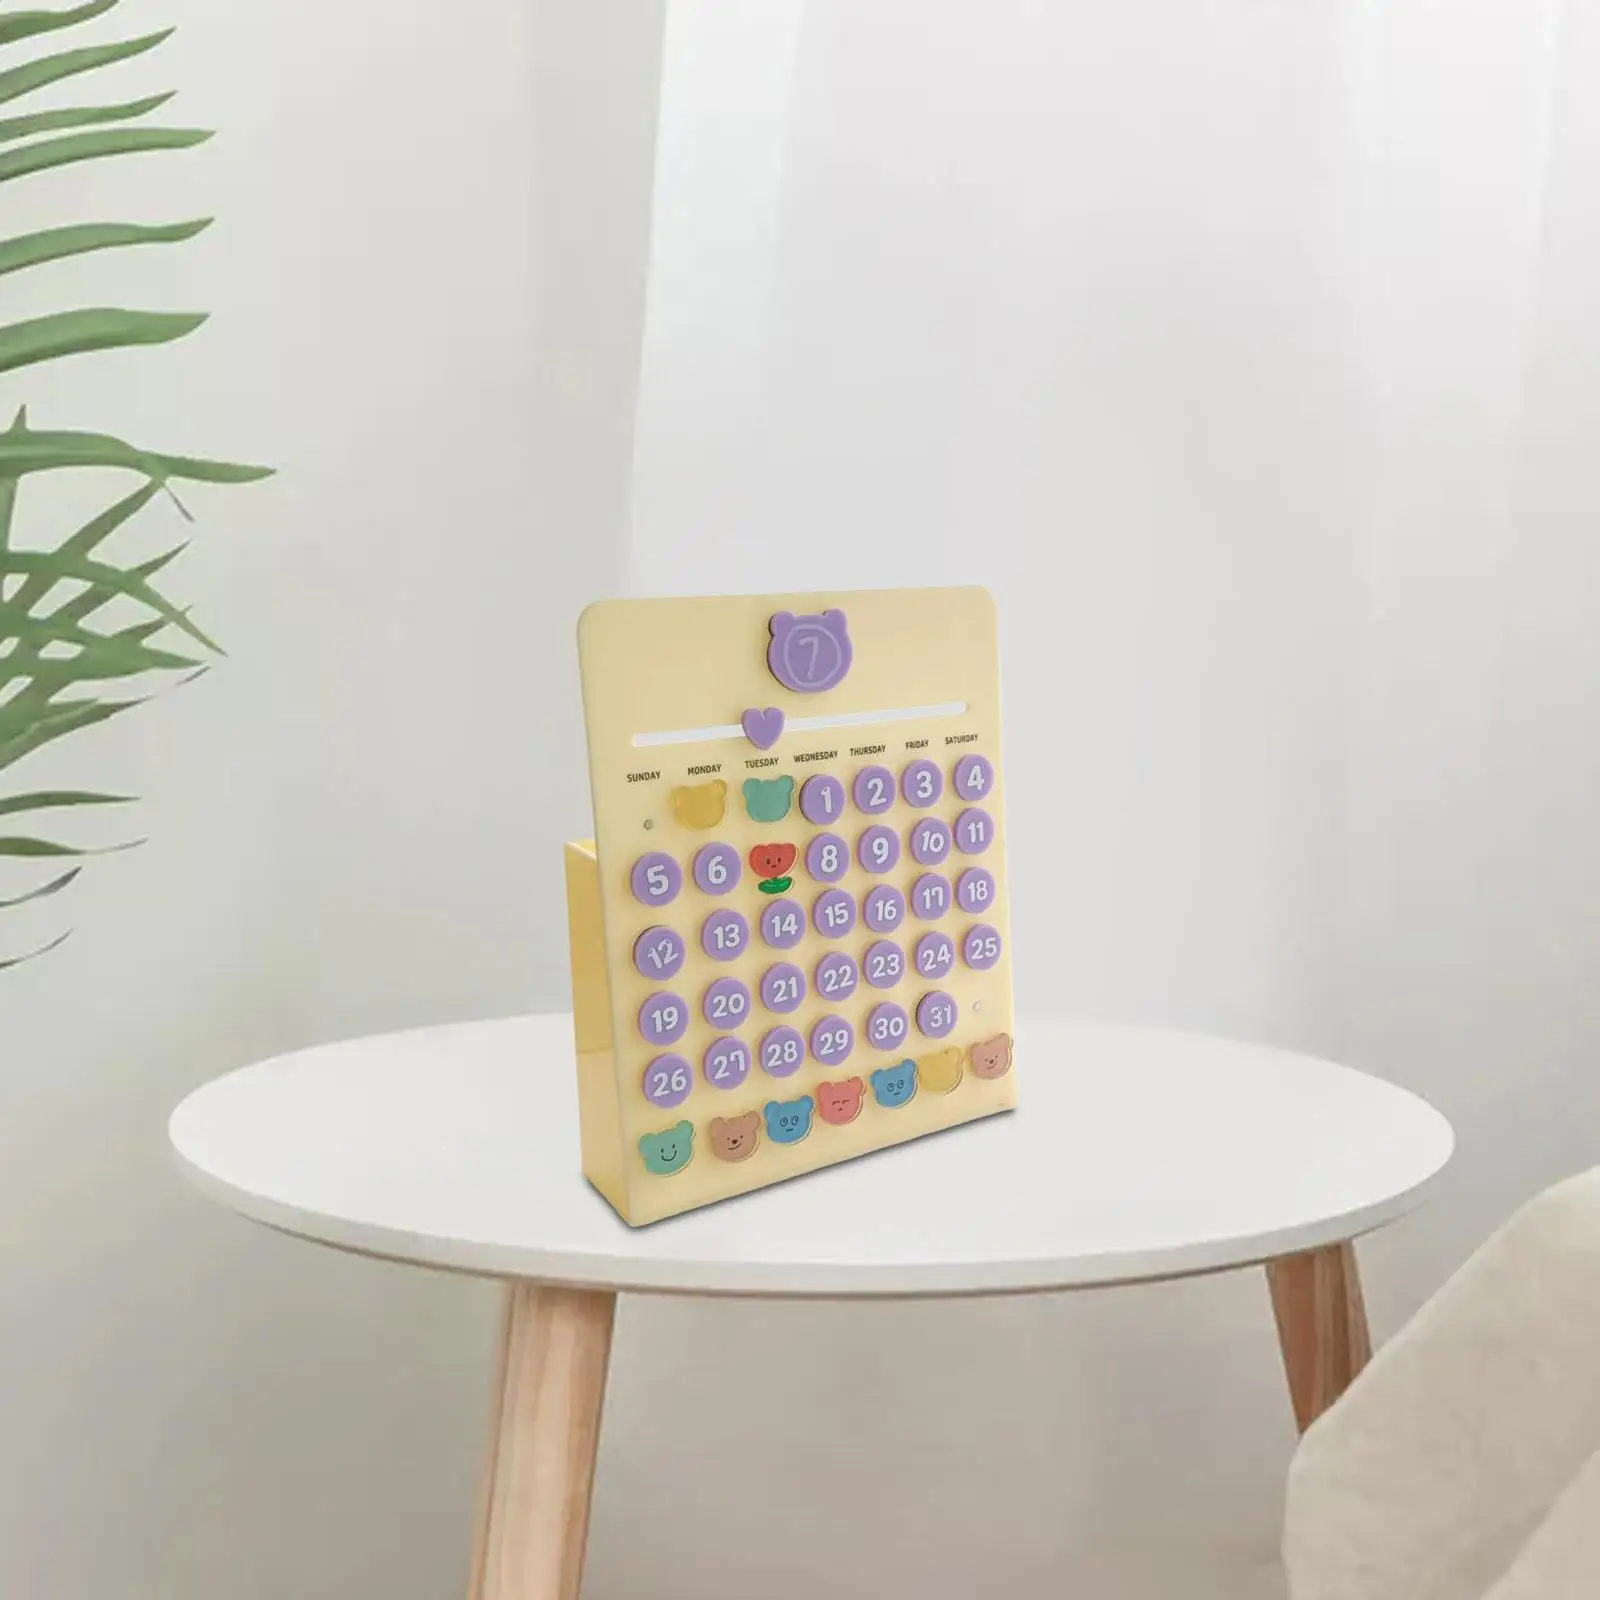 Perpetual Calendar Educational Toys Acrylic Reusable for Desktop Decor